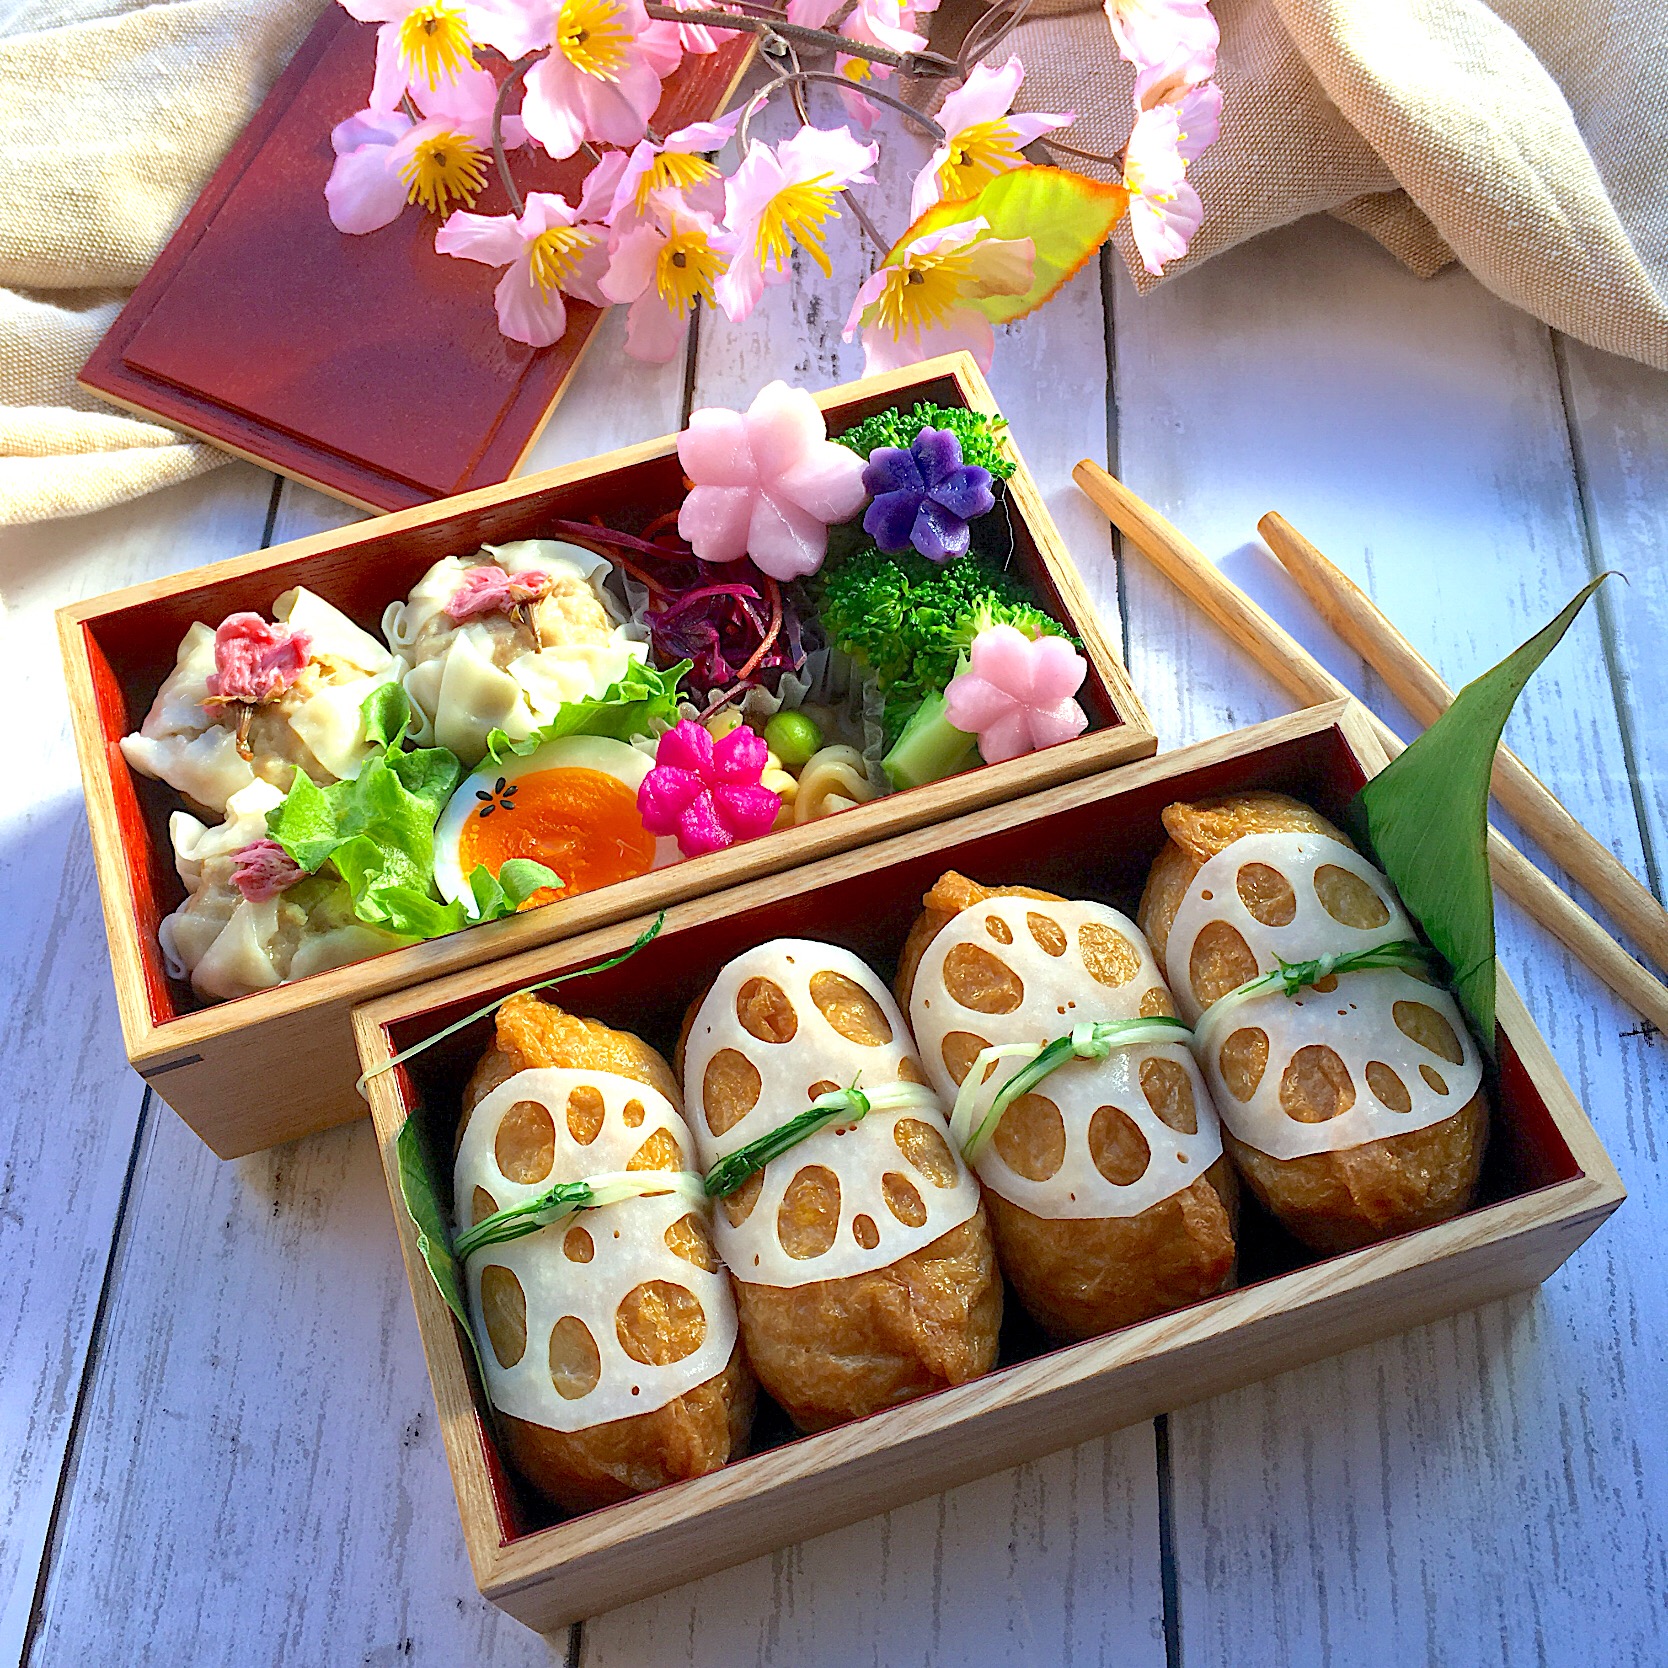 いなり寿司と桜焼売のお弁当 お花見ギャザリング グランプリ19 ヤマサ醤油株式会社